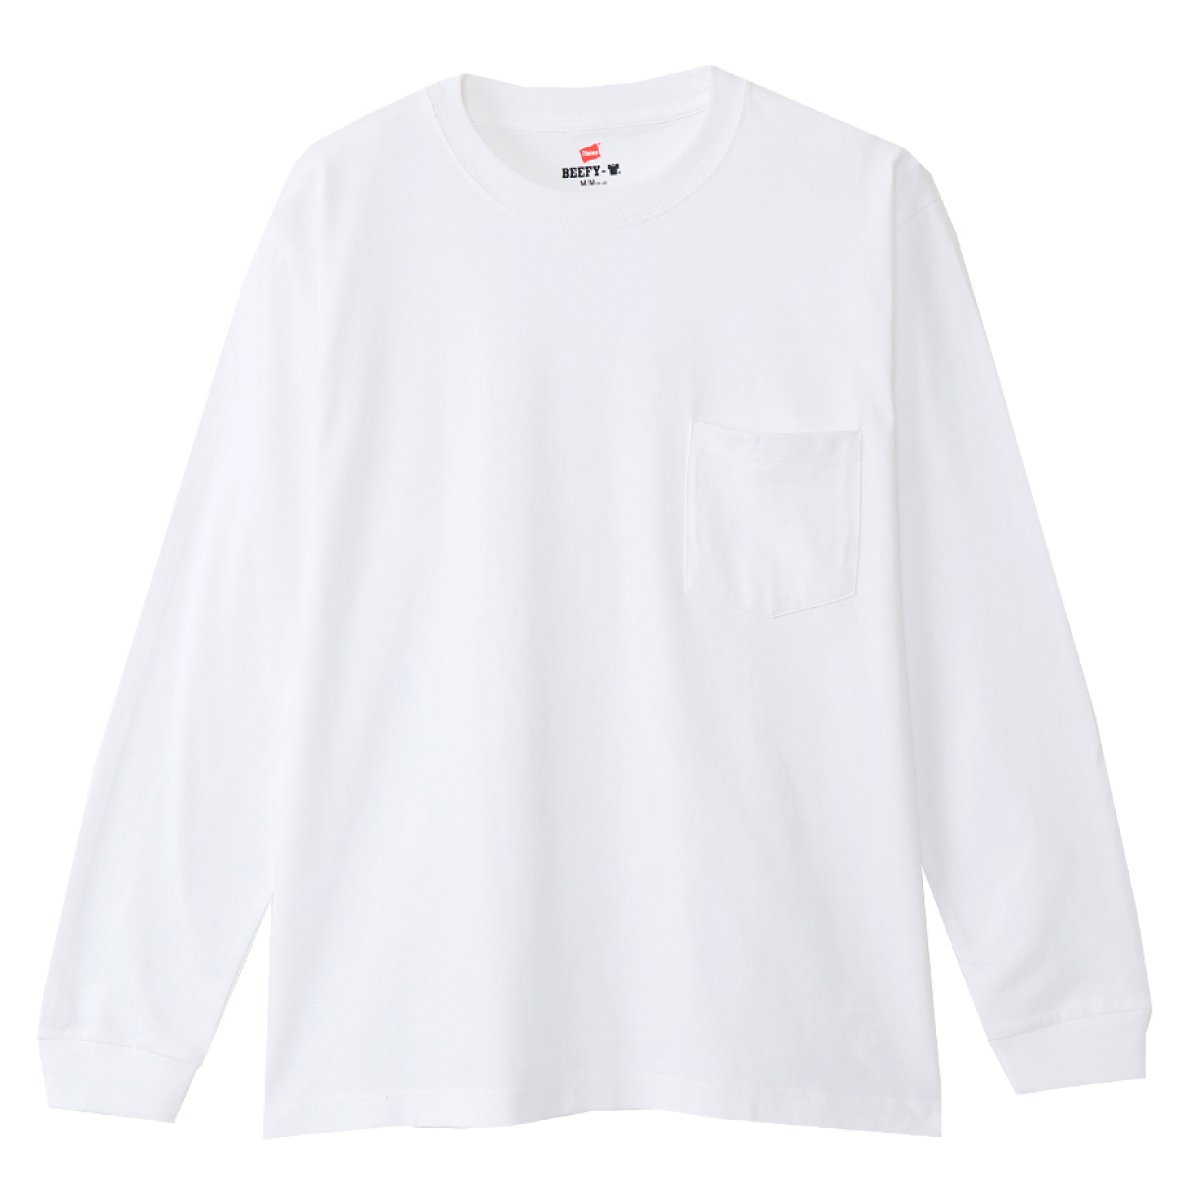 ビーフィーポケットロングスリーブTシャツ BEEFY-T ヘインズ | メンズ | 1枚 | H5196 | ダークグレー